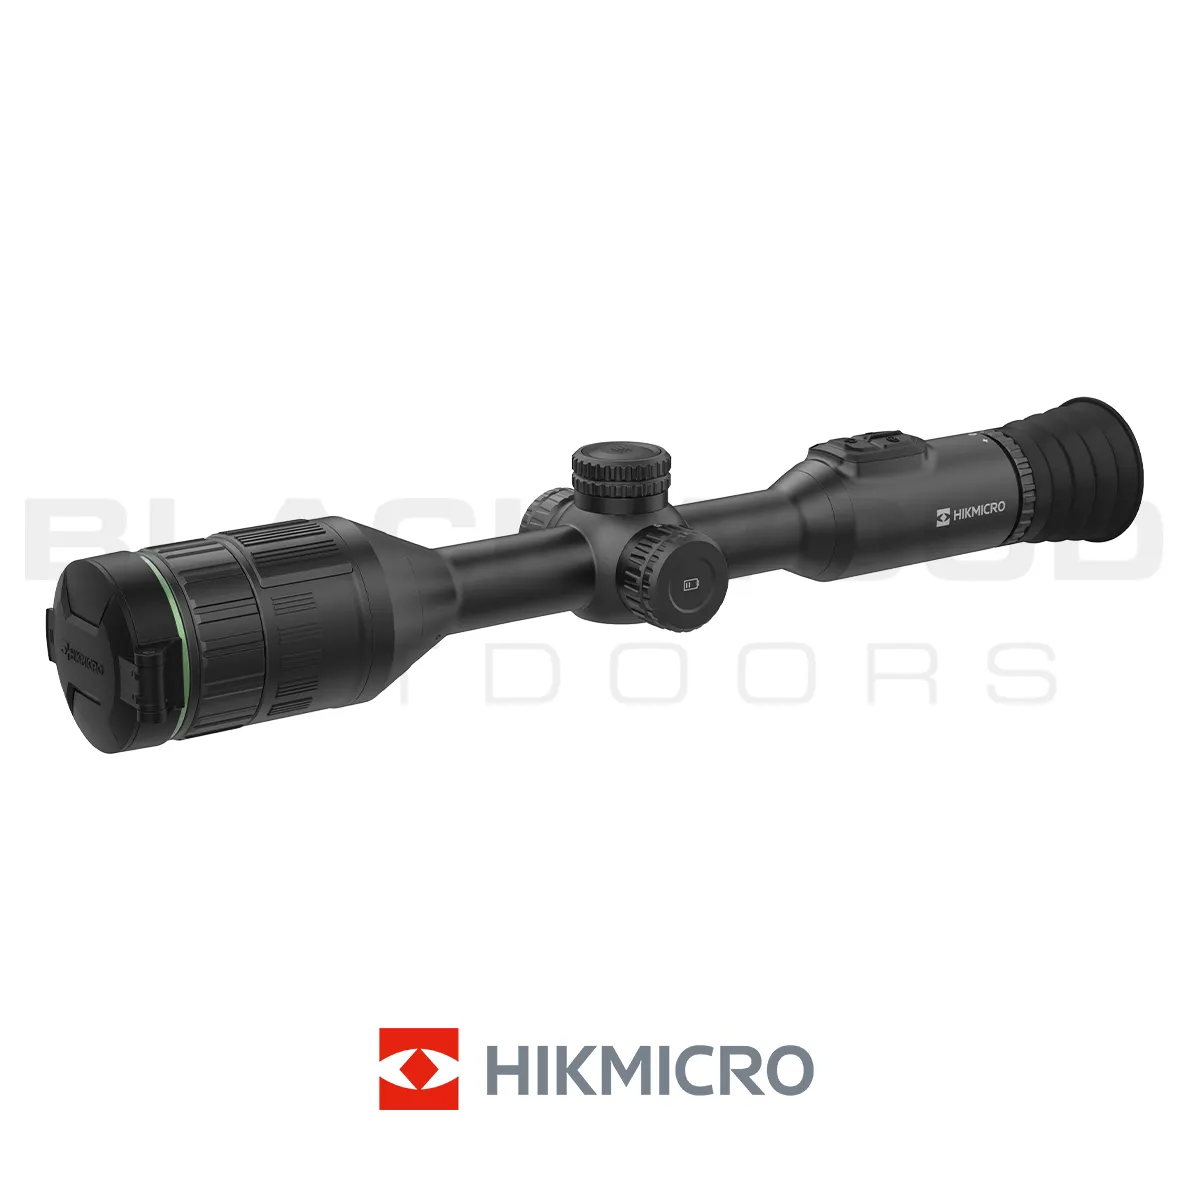 HikMicro Alpex 4K Standard A50E Night VIsion Scope